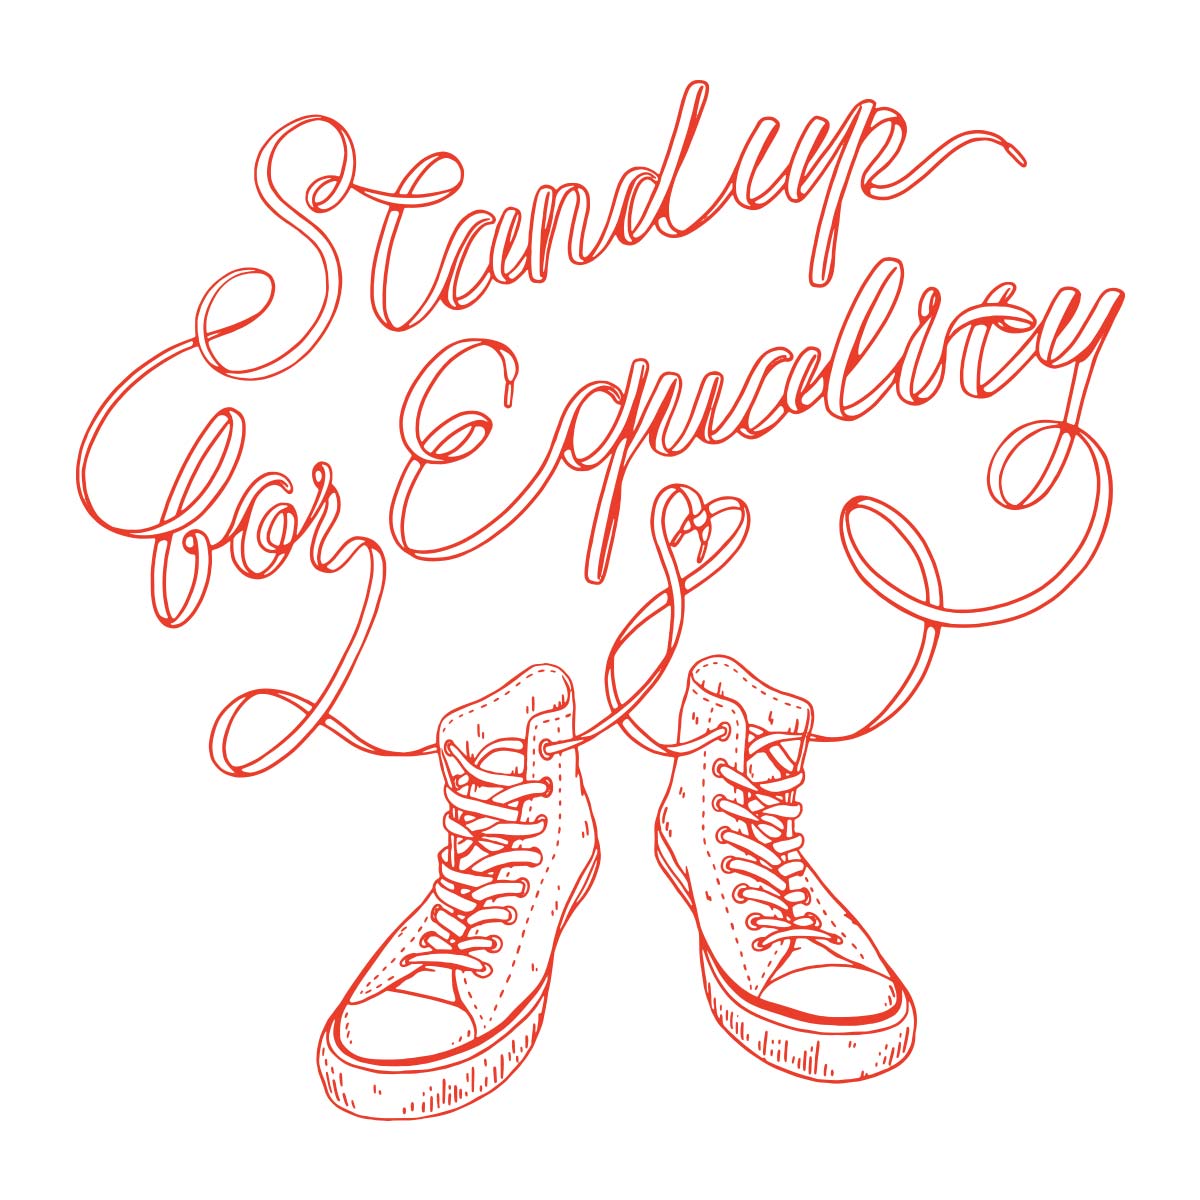 Stand up for equality（平等のために立ち上がれ）が靴ひもで描かれています